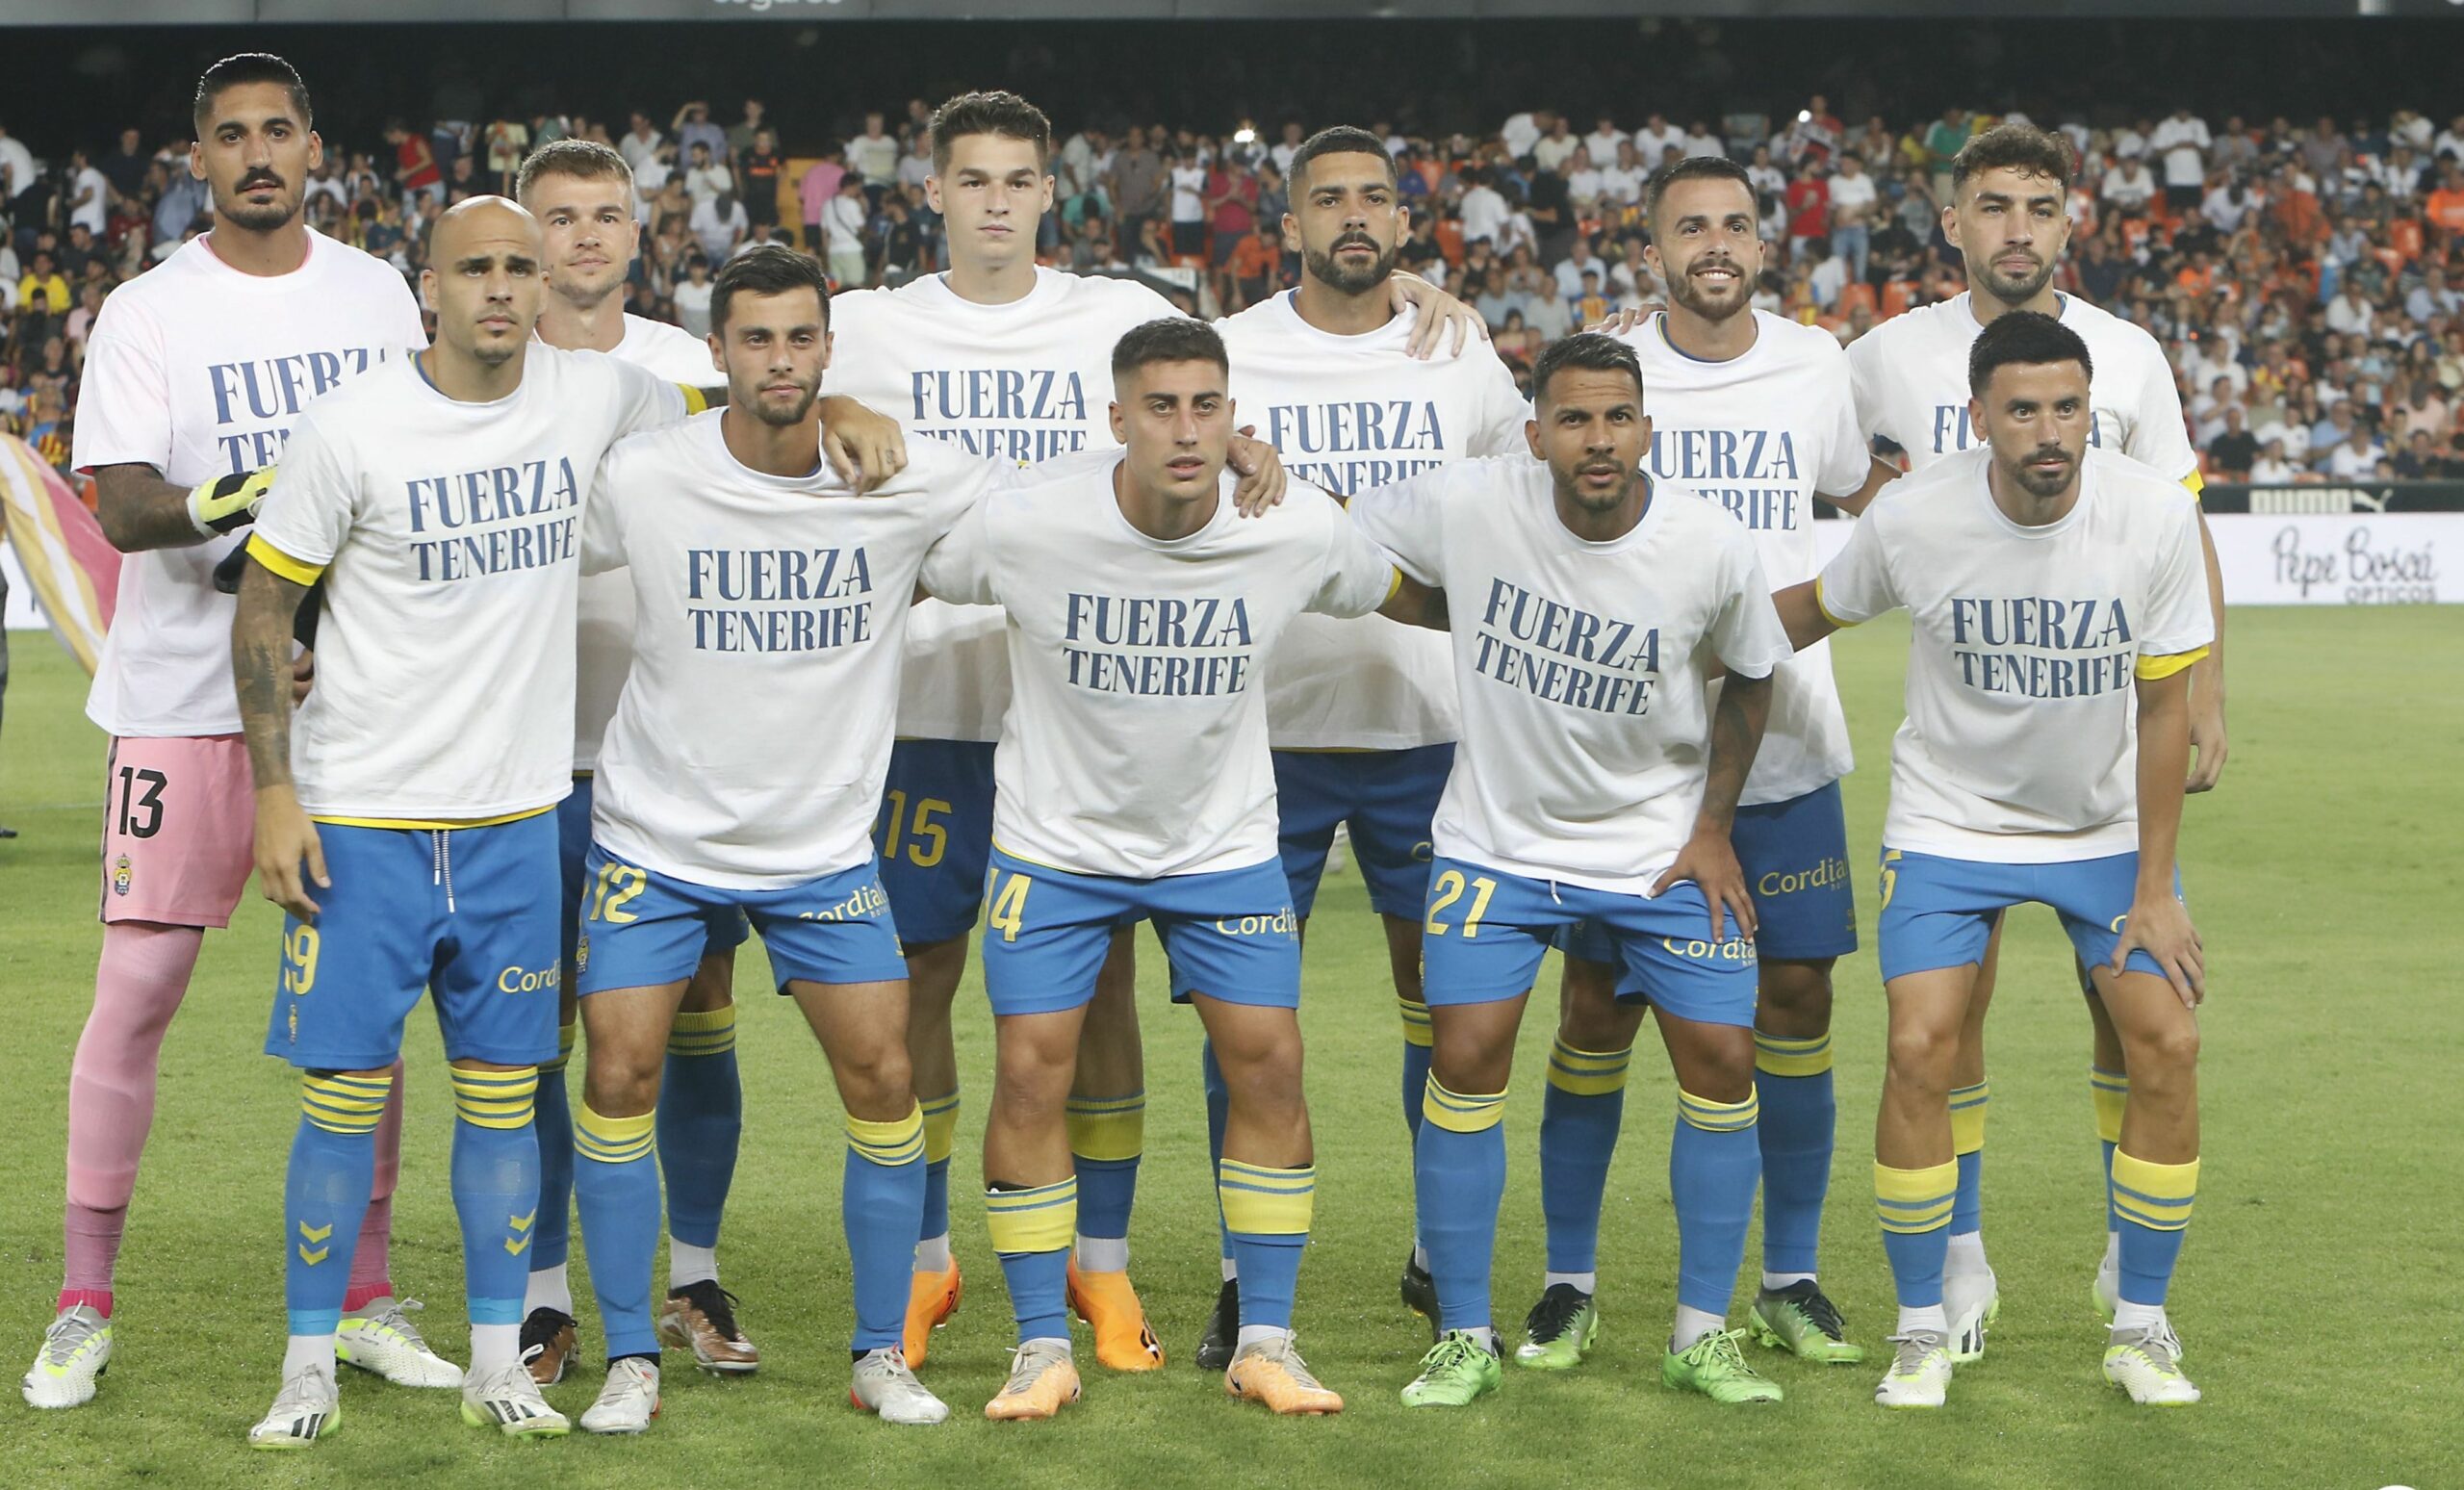 La UD Las Palmas salió al partido contra el Valencia con una camiseta de apoyo a Tenerife